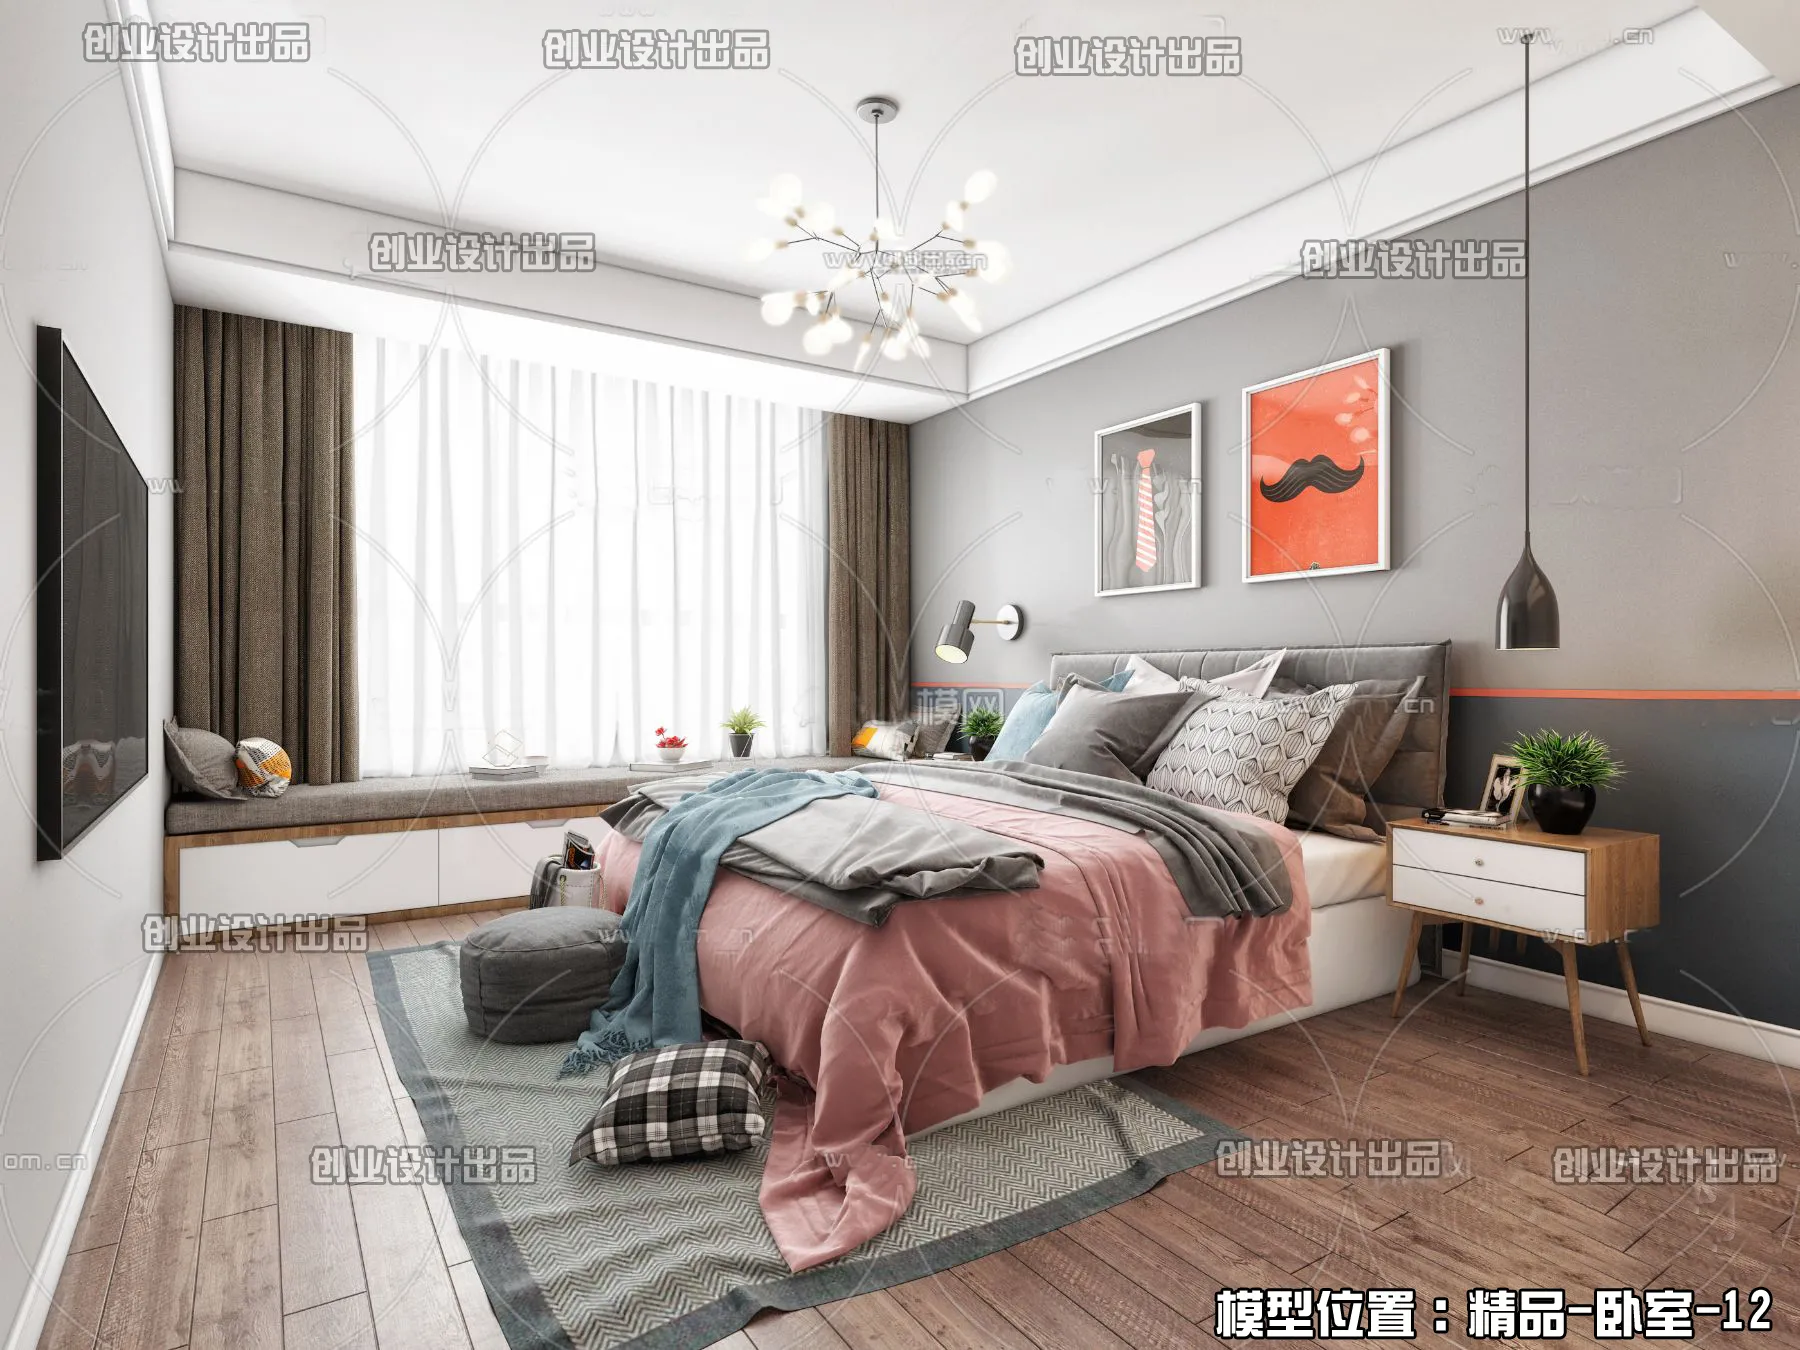 Bedroom – Scandinavian architecture – 041